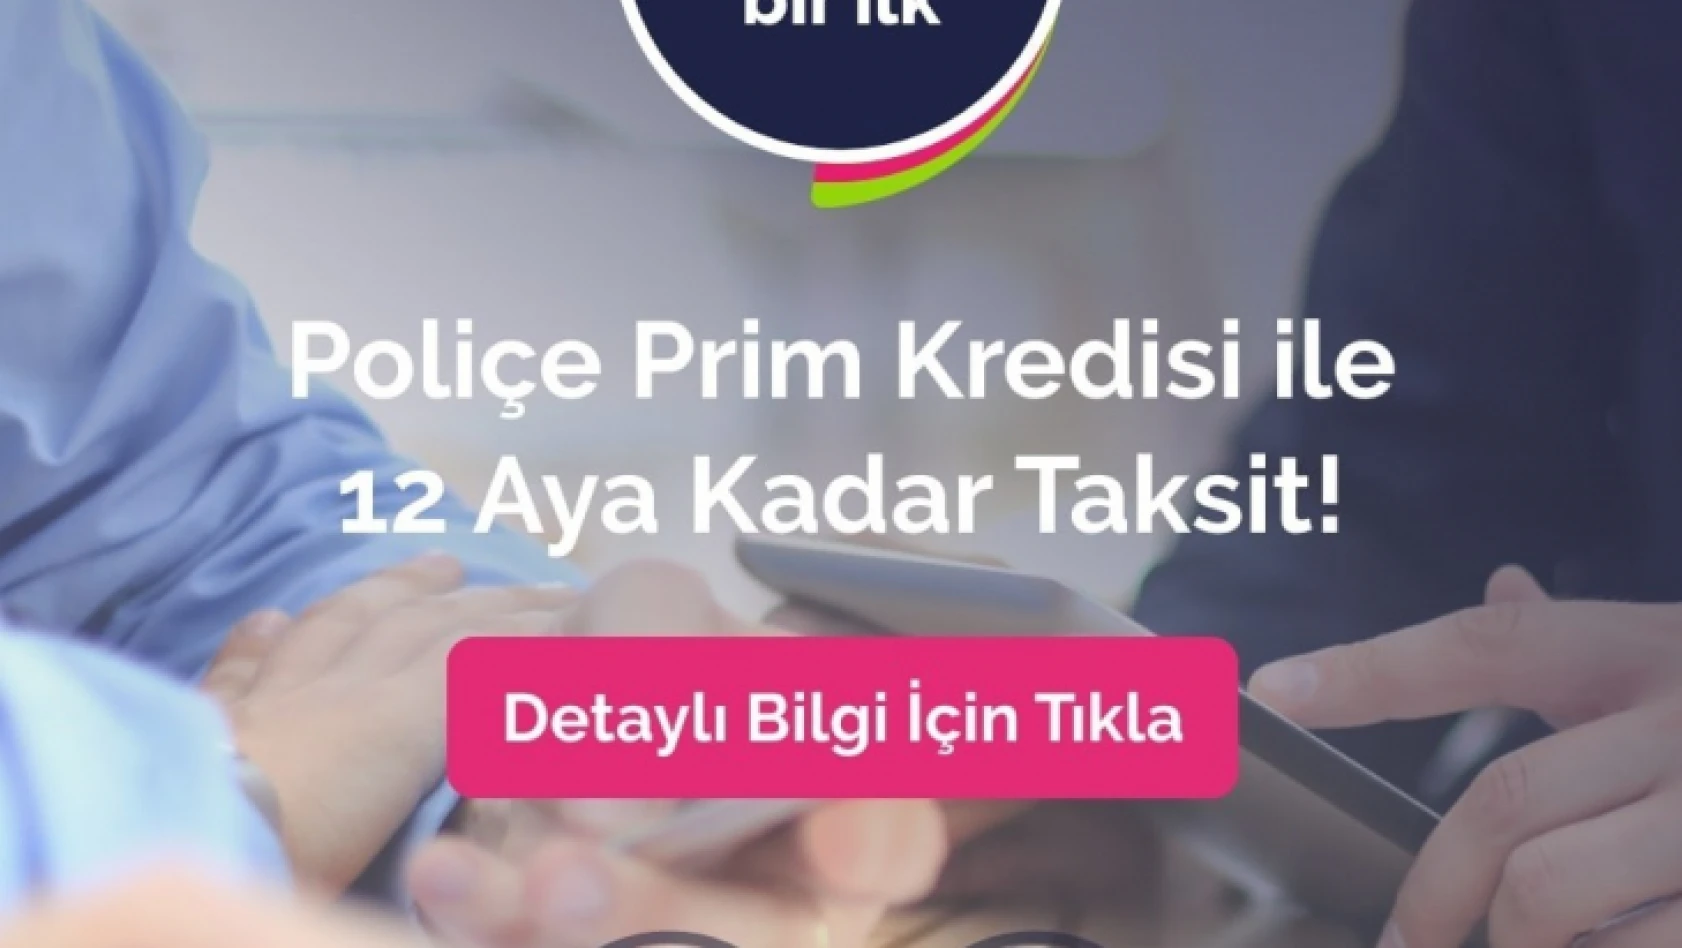 Türkiye'de bir ilk: Quick Finans Poliçe Prim Kredisi ile tüm poliçelere 12 ay taksit